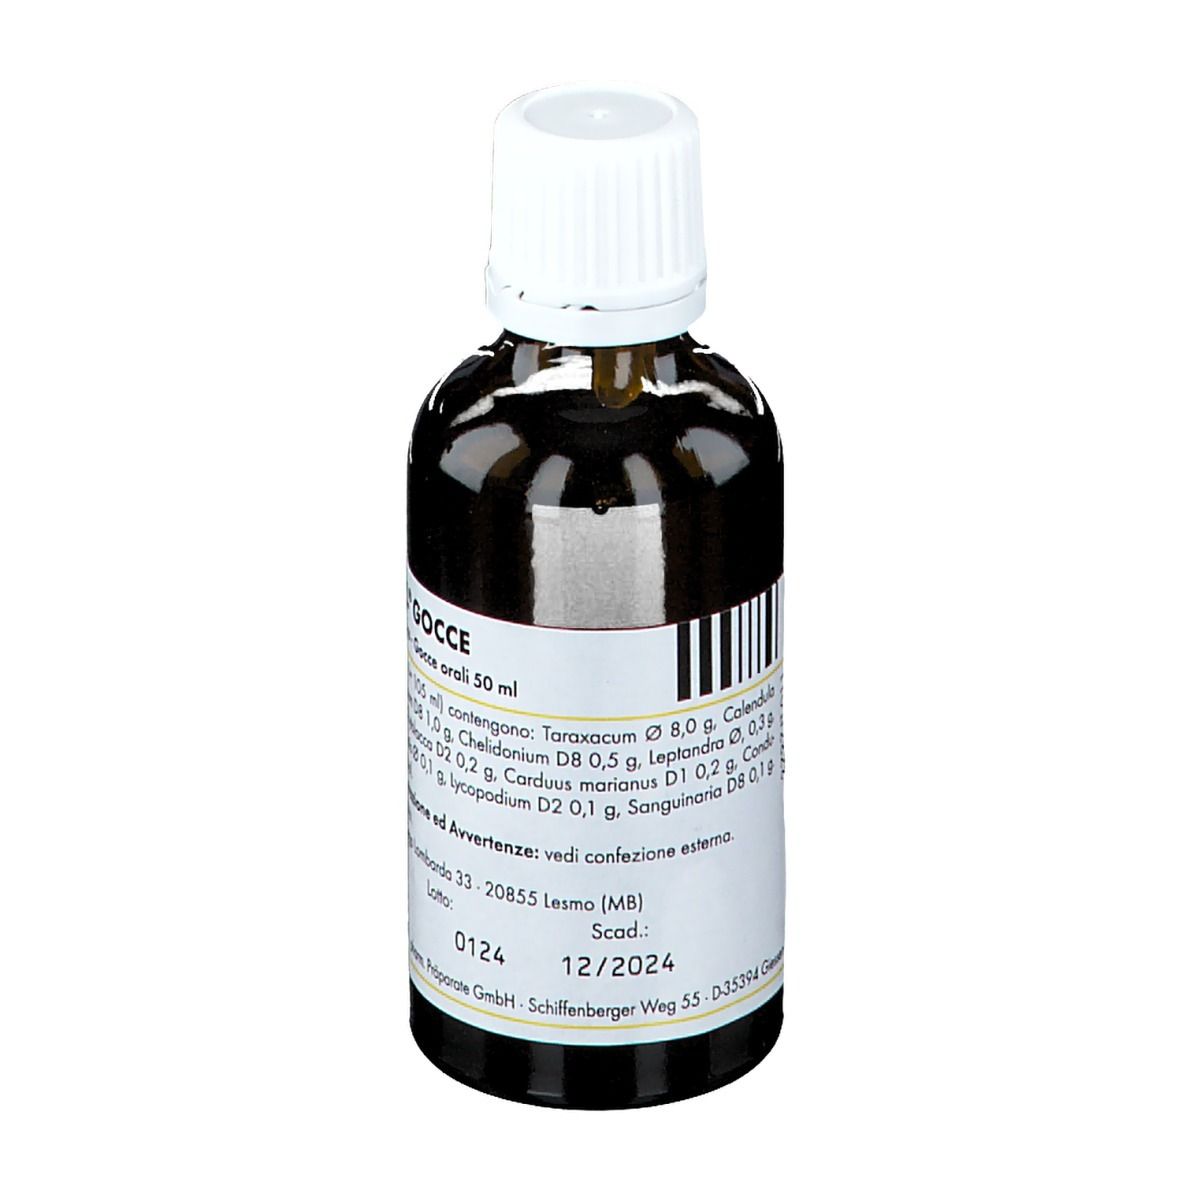 PASCOE NATURMEDIZIN Lymdiaral® gocce 50 ml